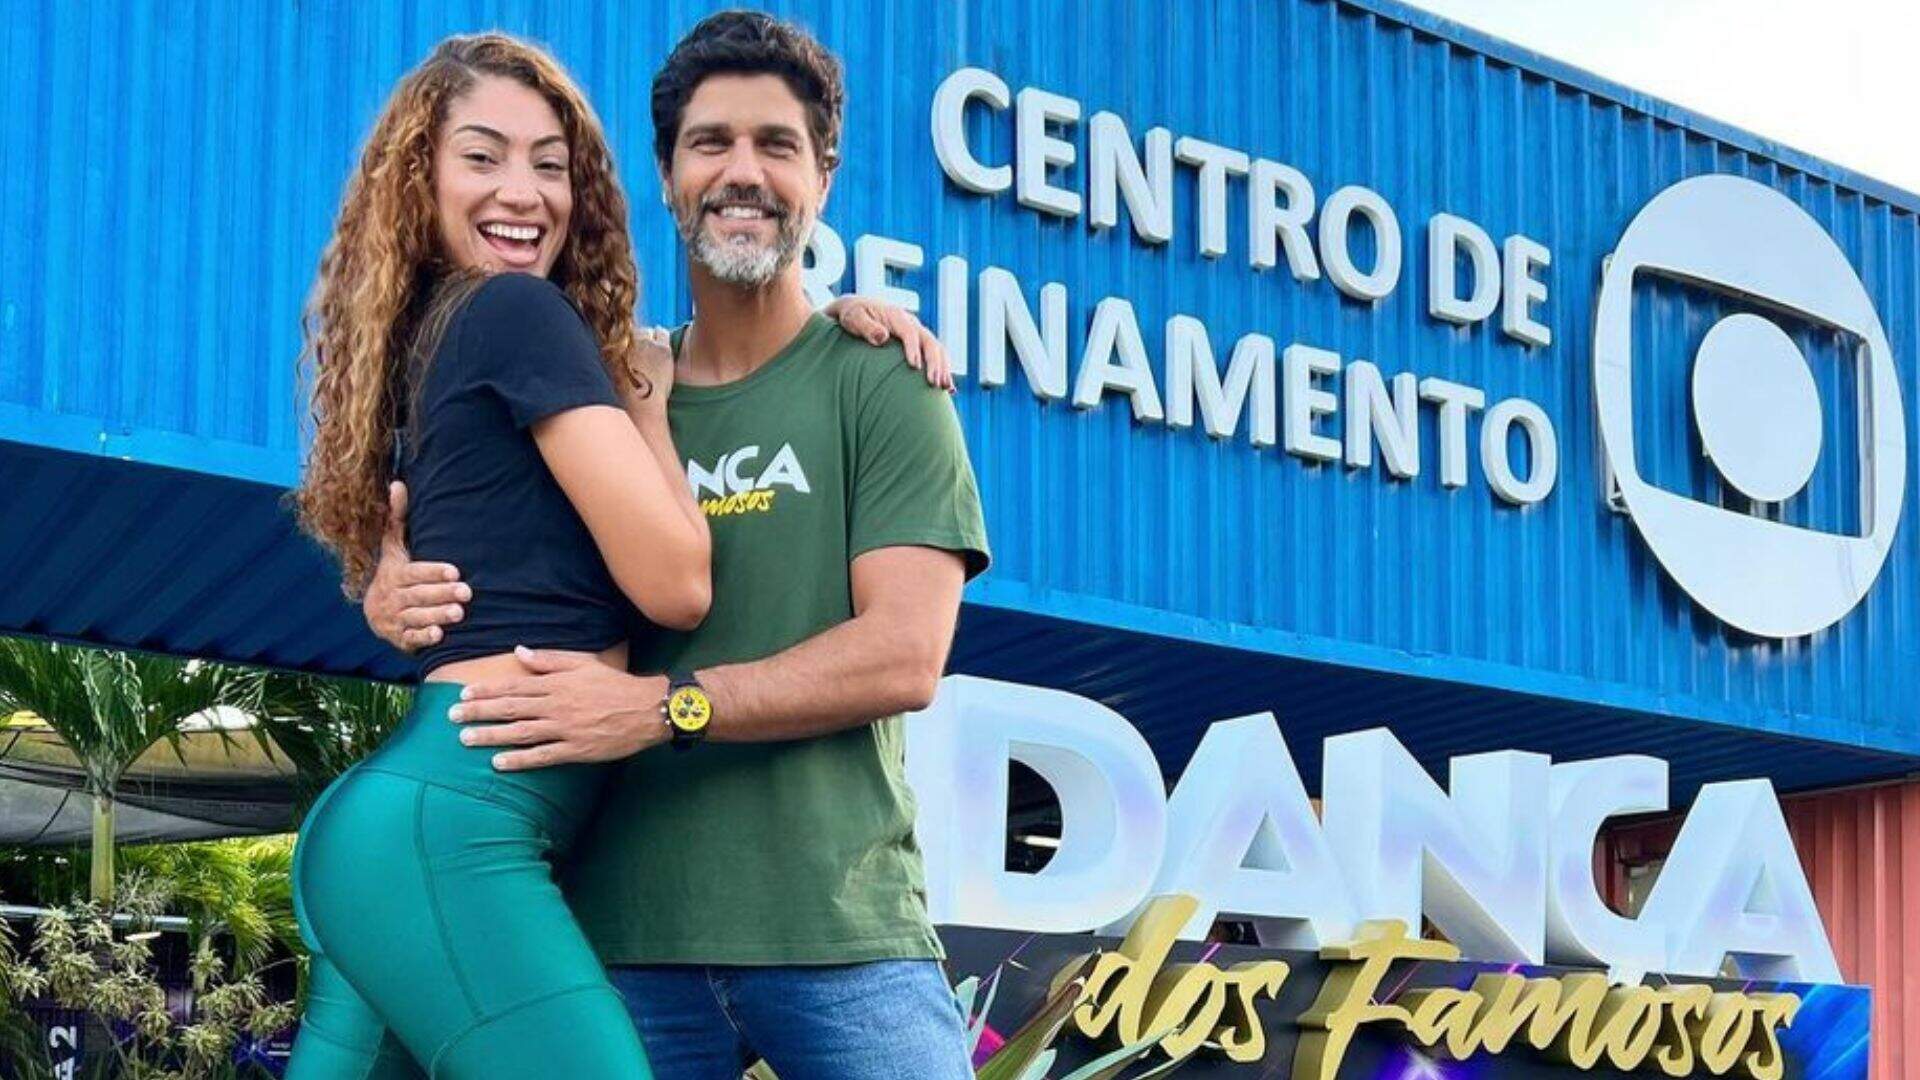 Bruno Cabrerizo abre o jogo sobre suposto relacionamento com parceira da Dança dos Famosos - Metropolitana FM